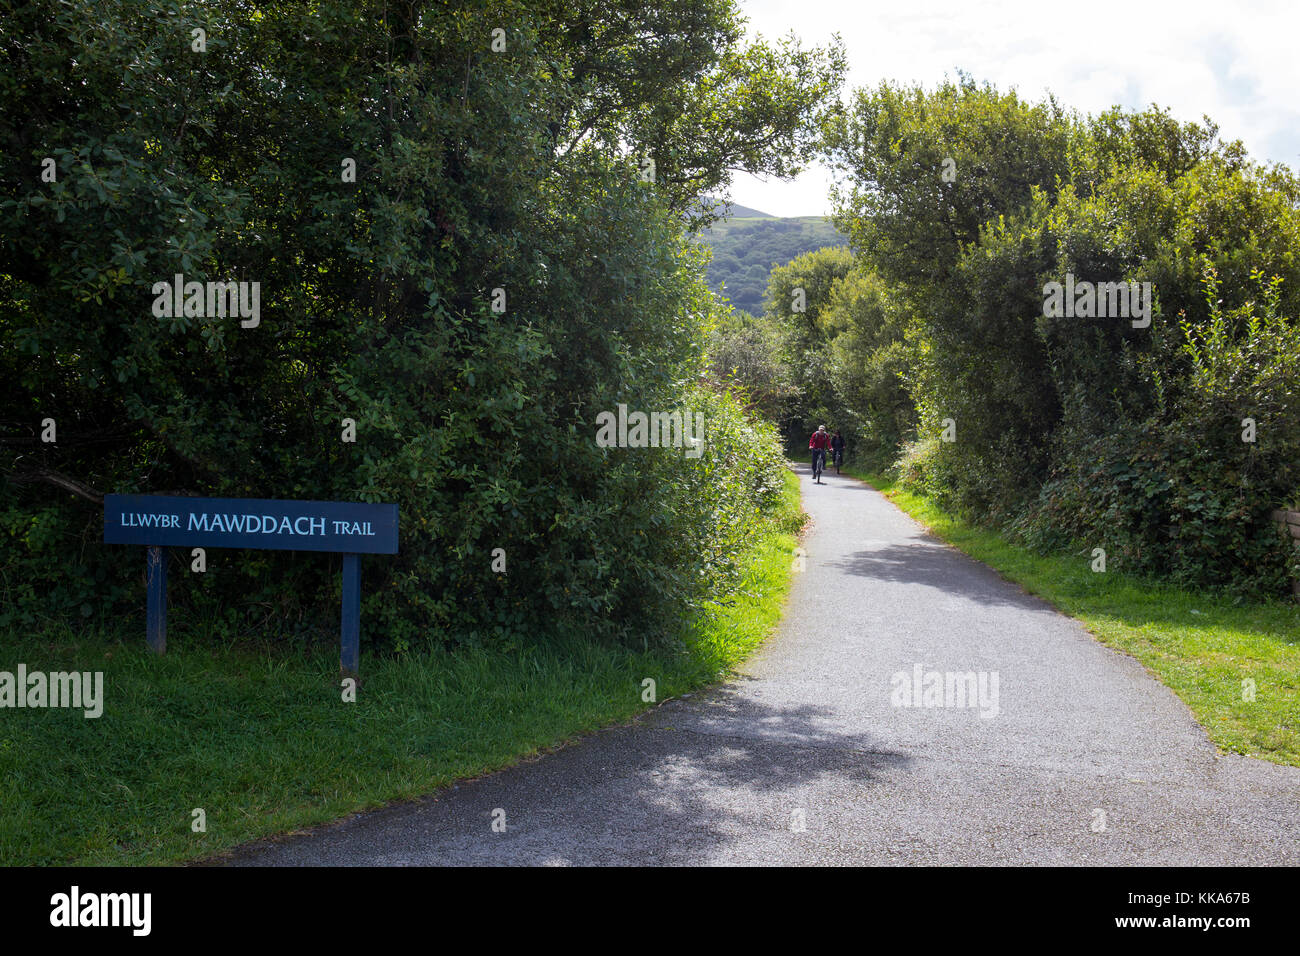 Llwybr Mawddach Trail Welsh Coast Path Sign in Barmouth Gwynedd Wales UK Stock Photo